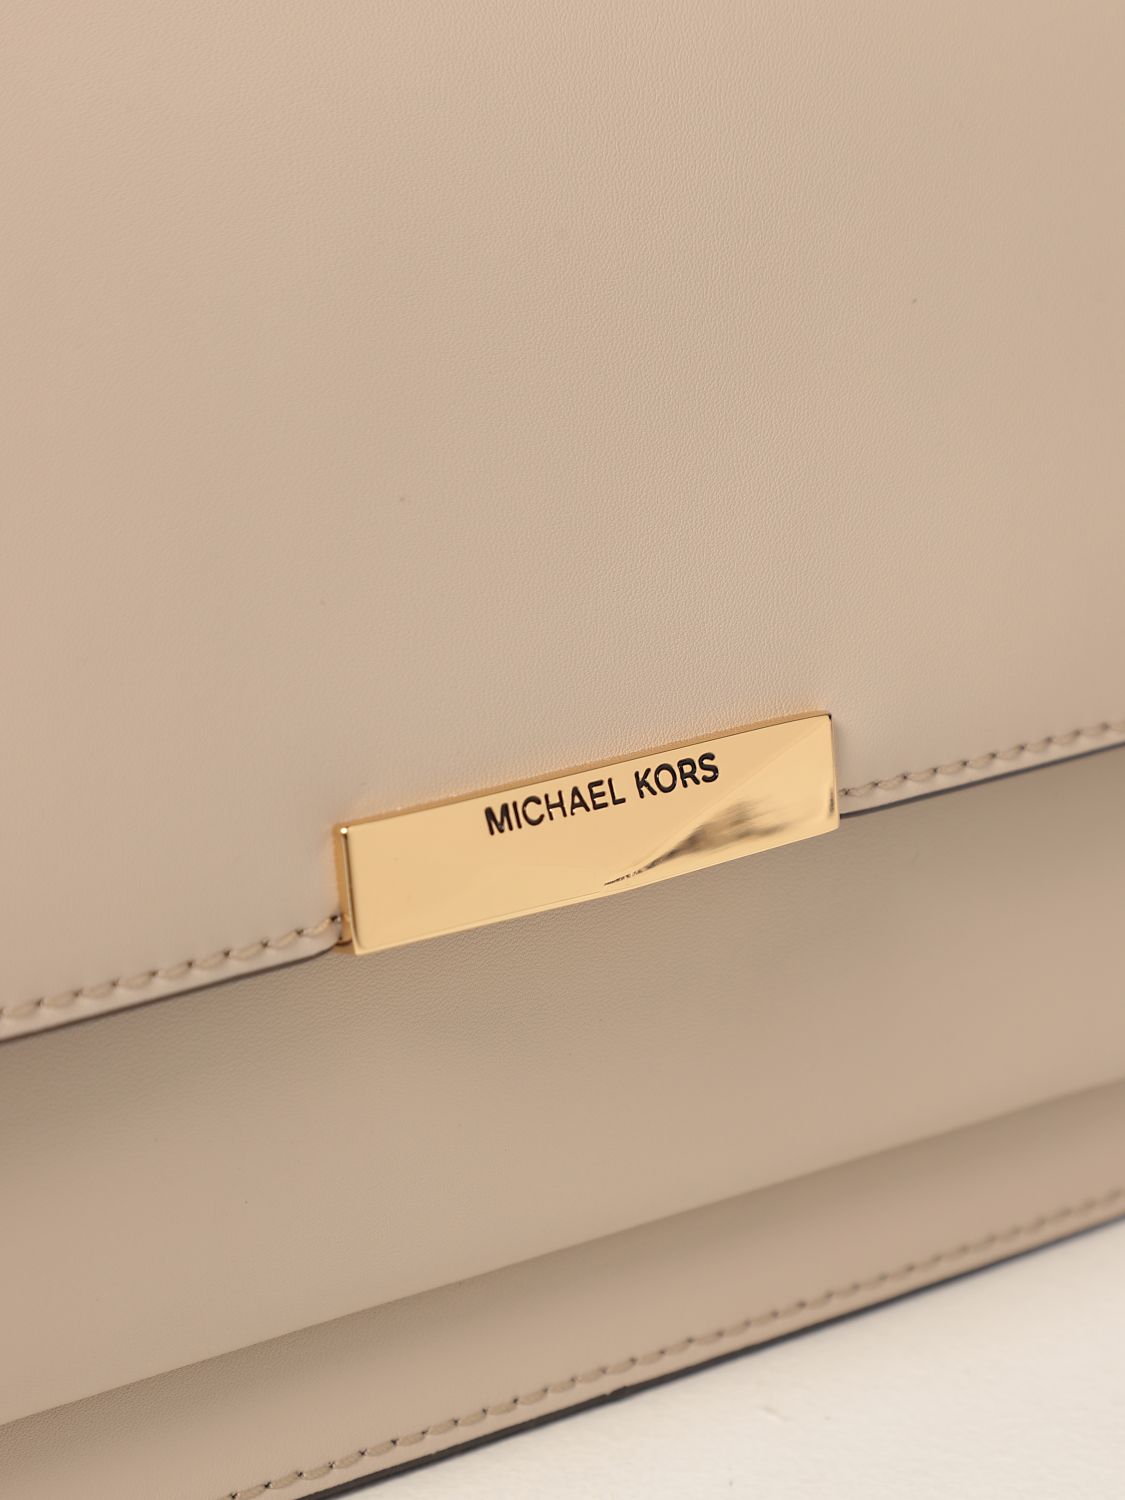 Shoulder bags Michael Kors - Jade L white smooth leather bag - 30S9GJ4L9L085